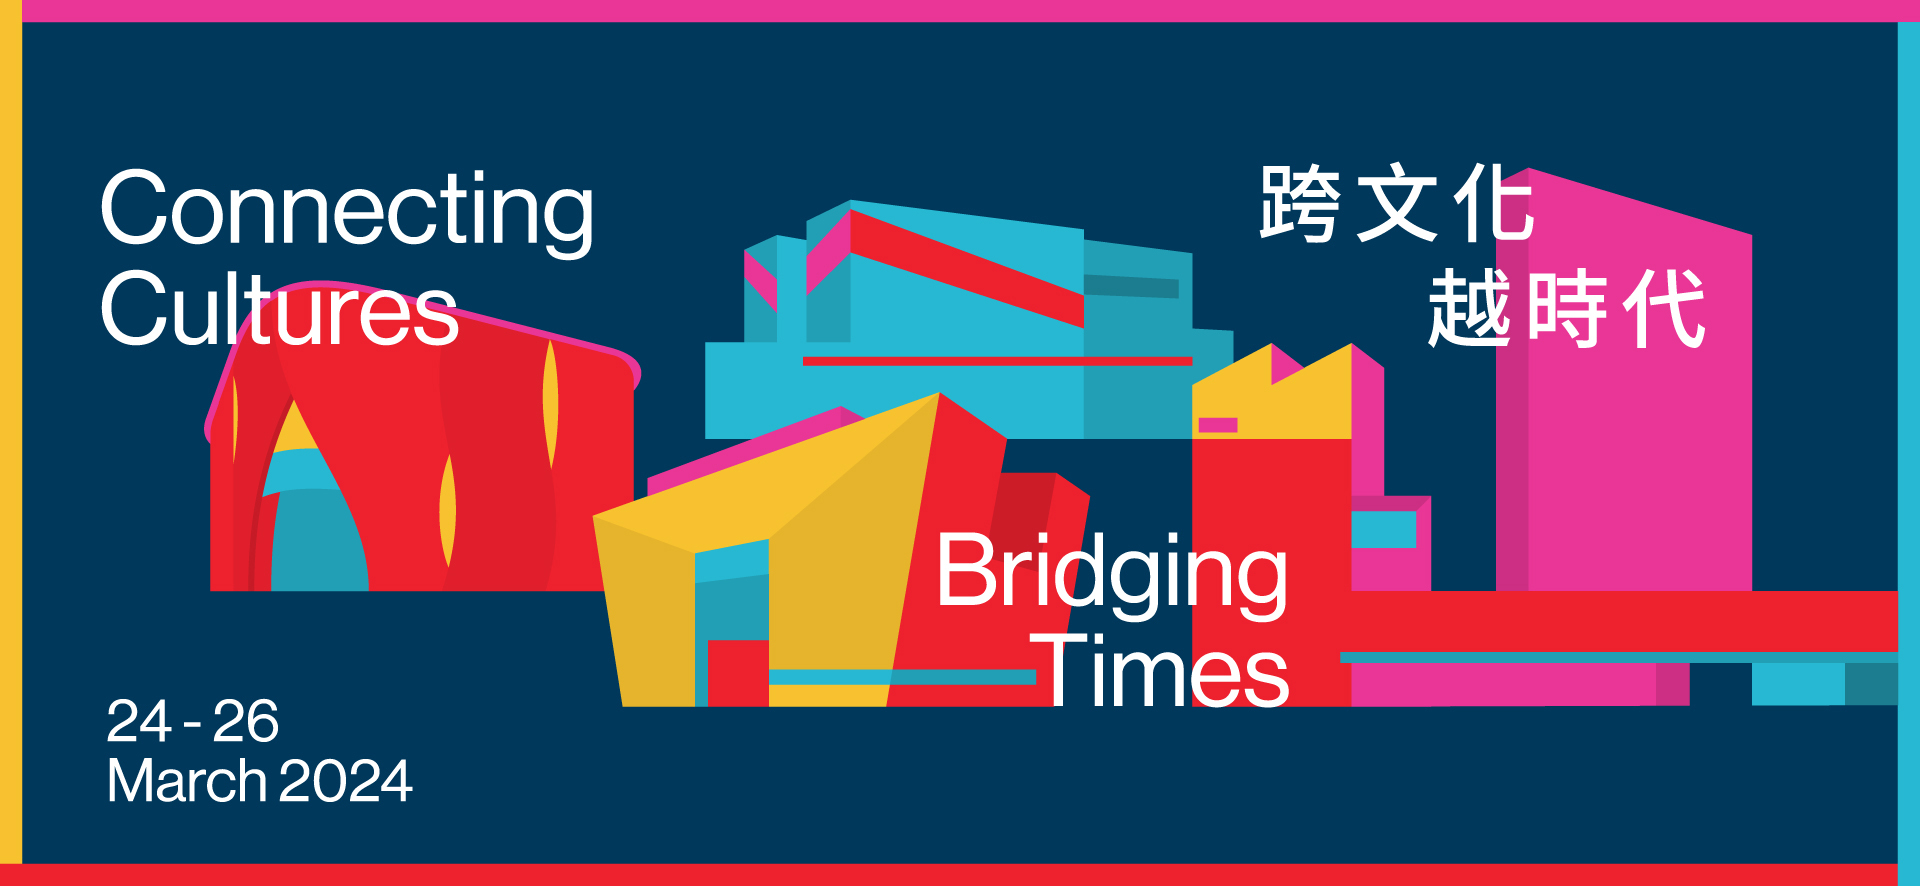 香港國際文化高峰論壇2024 - 跨文化 越時代